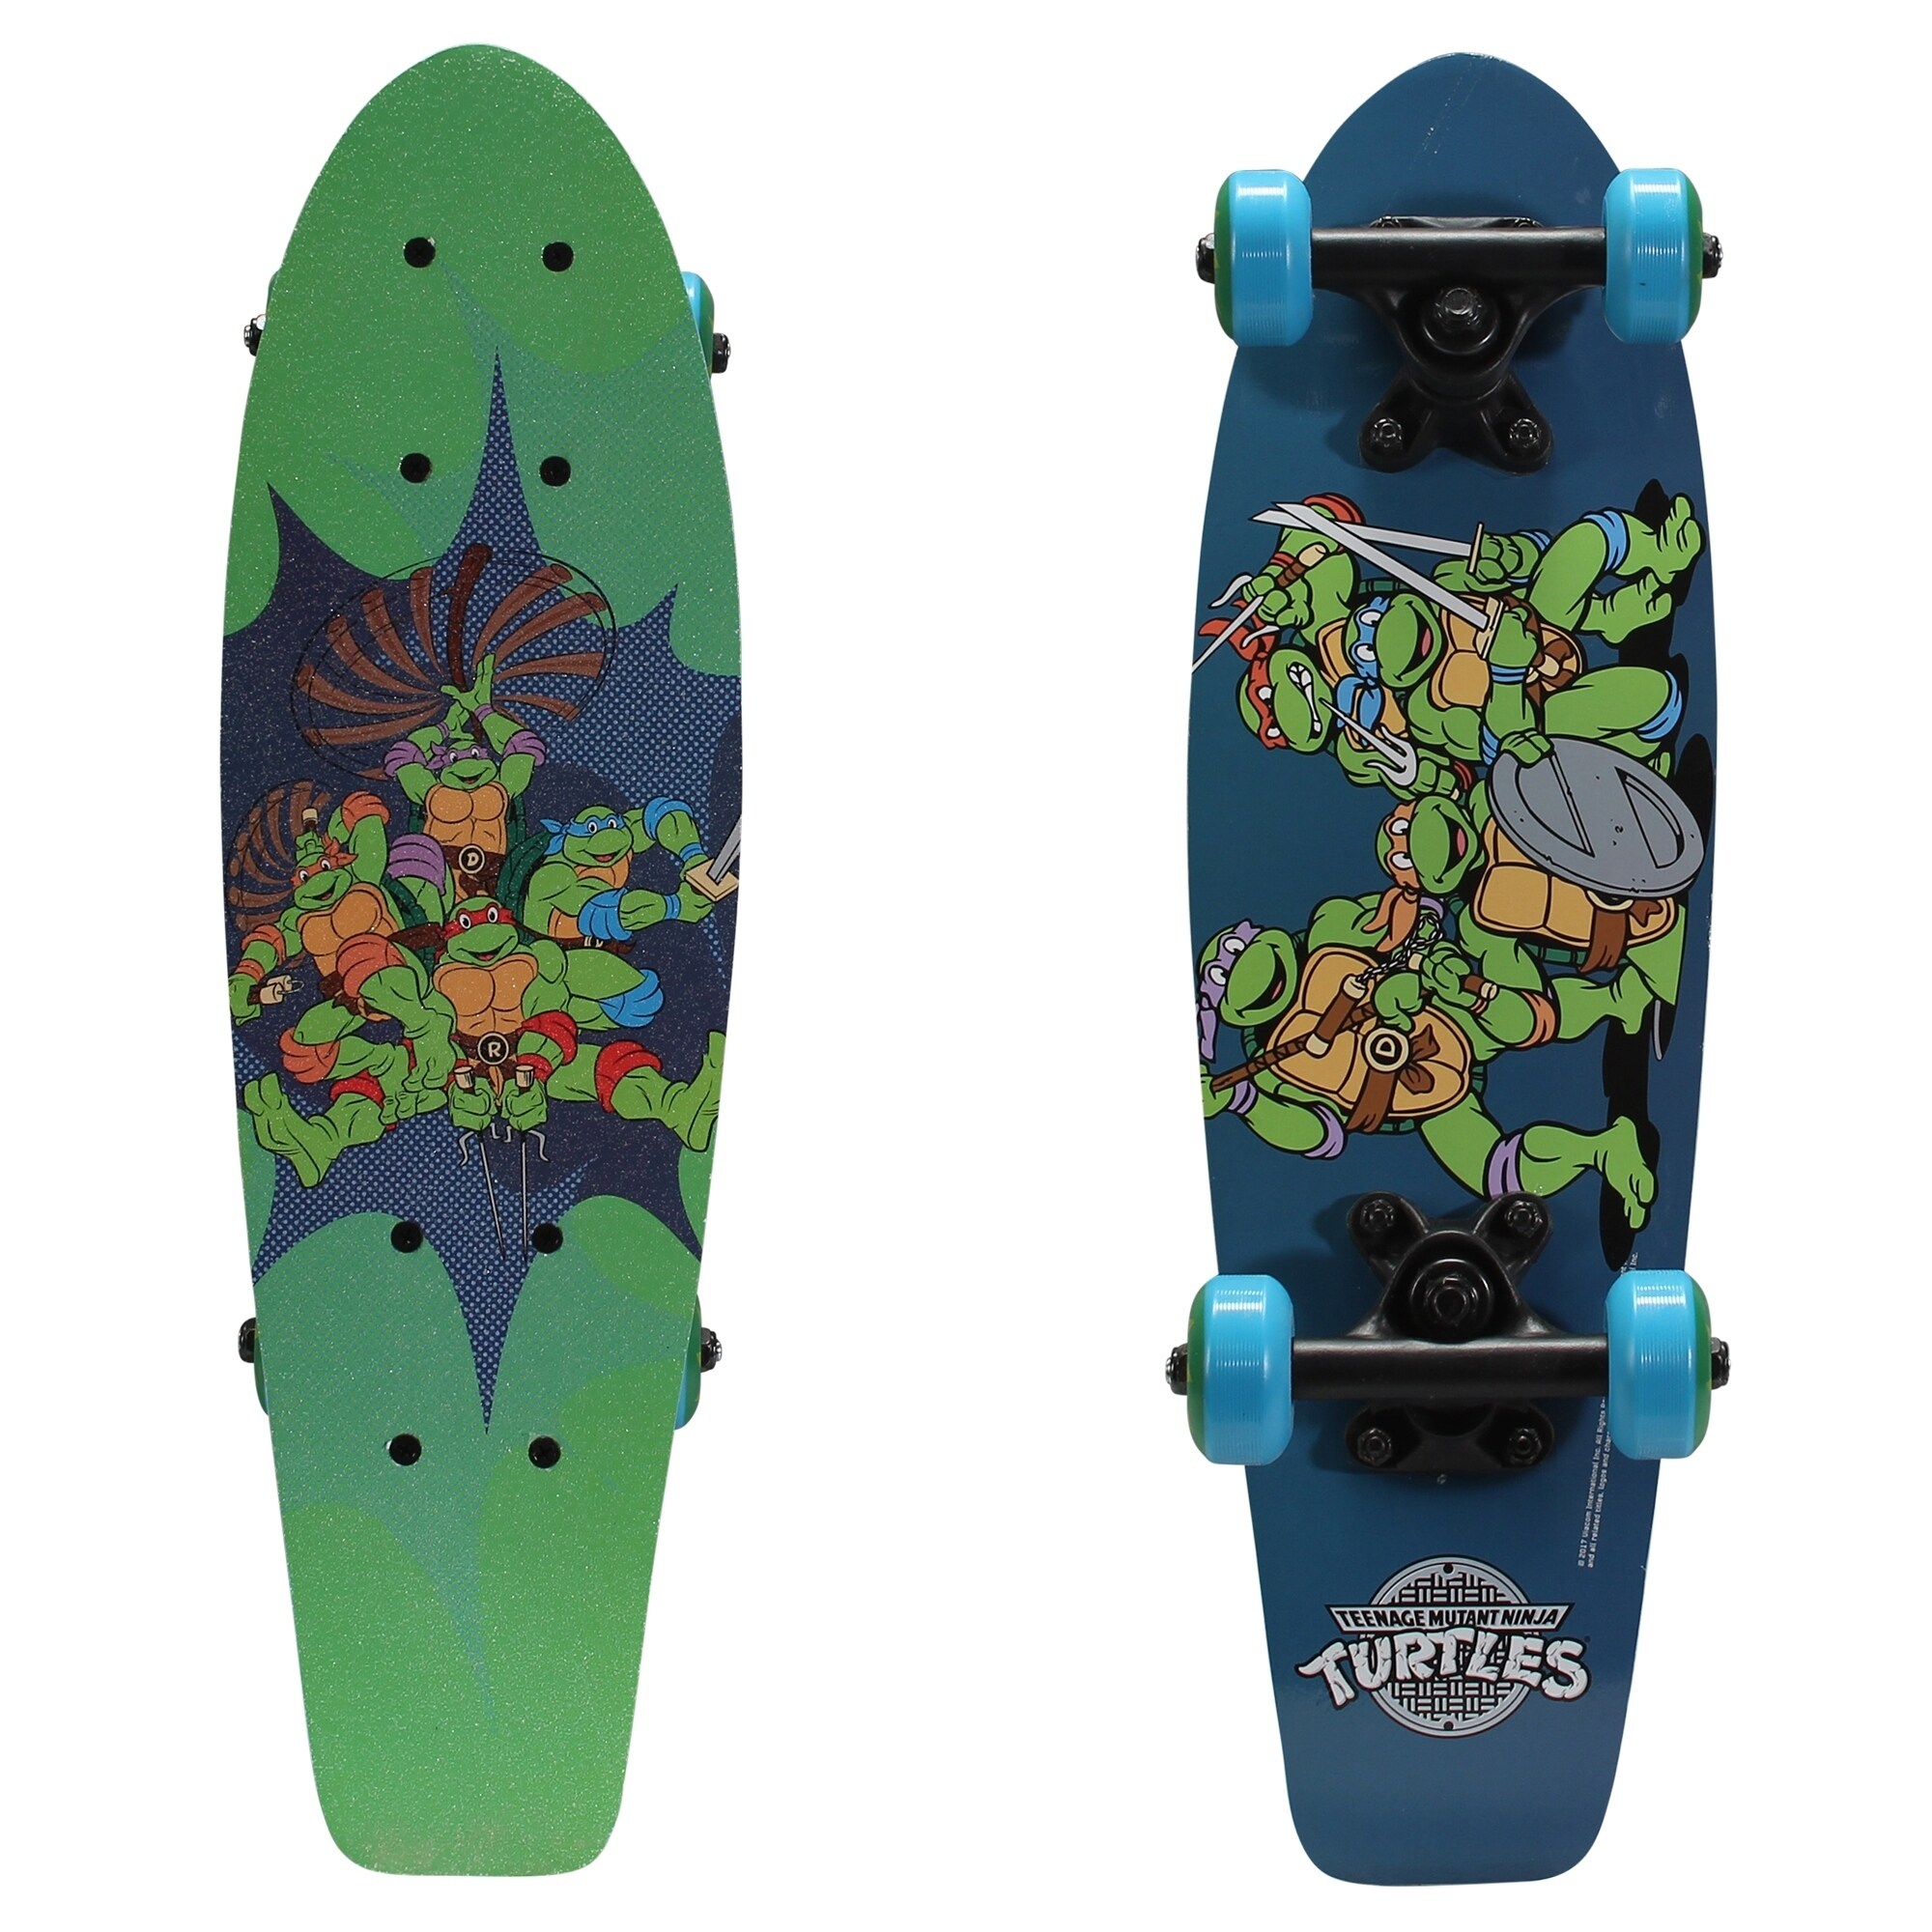 Adult Mutant Ninja Turtles Accessories Skateboard